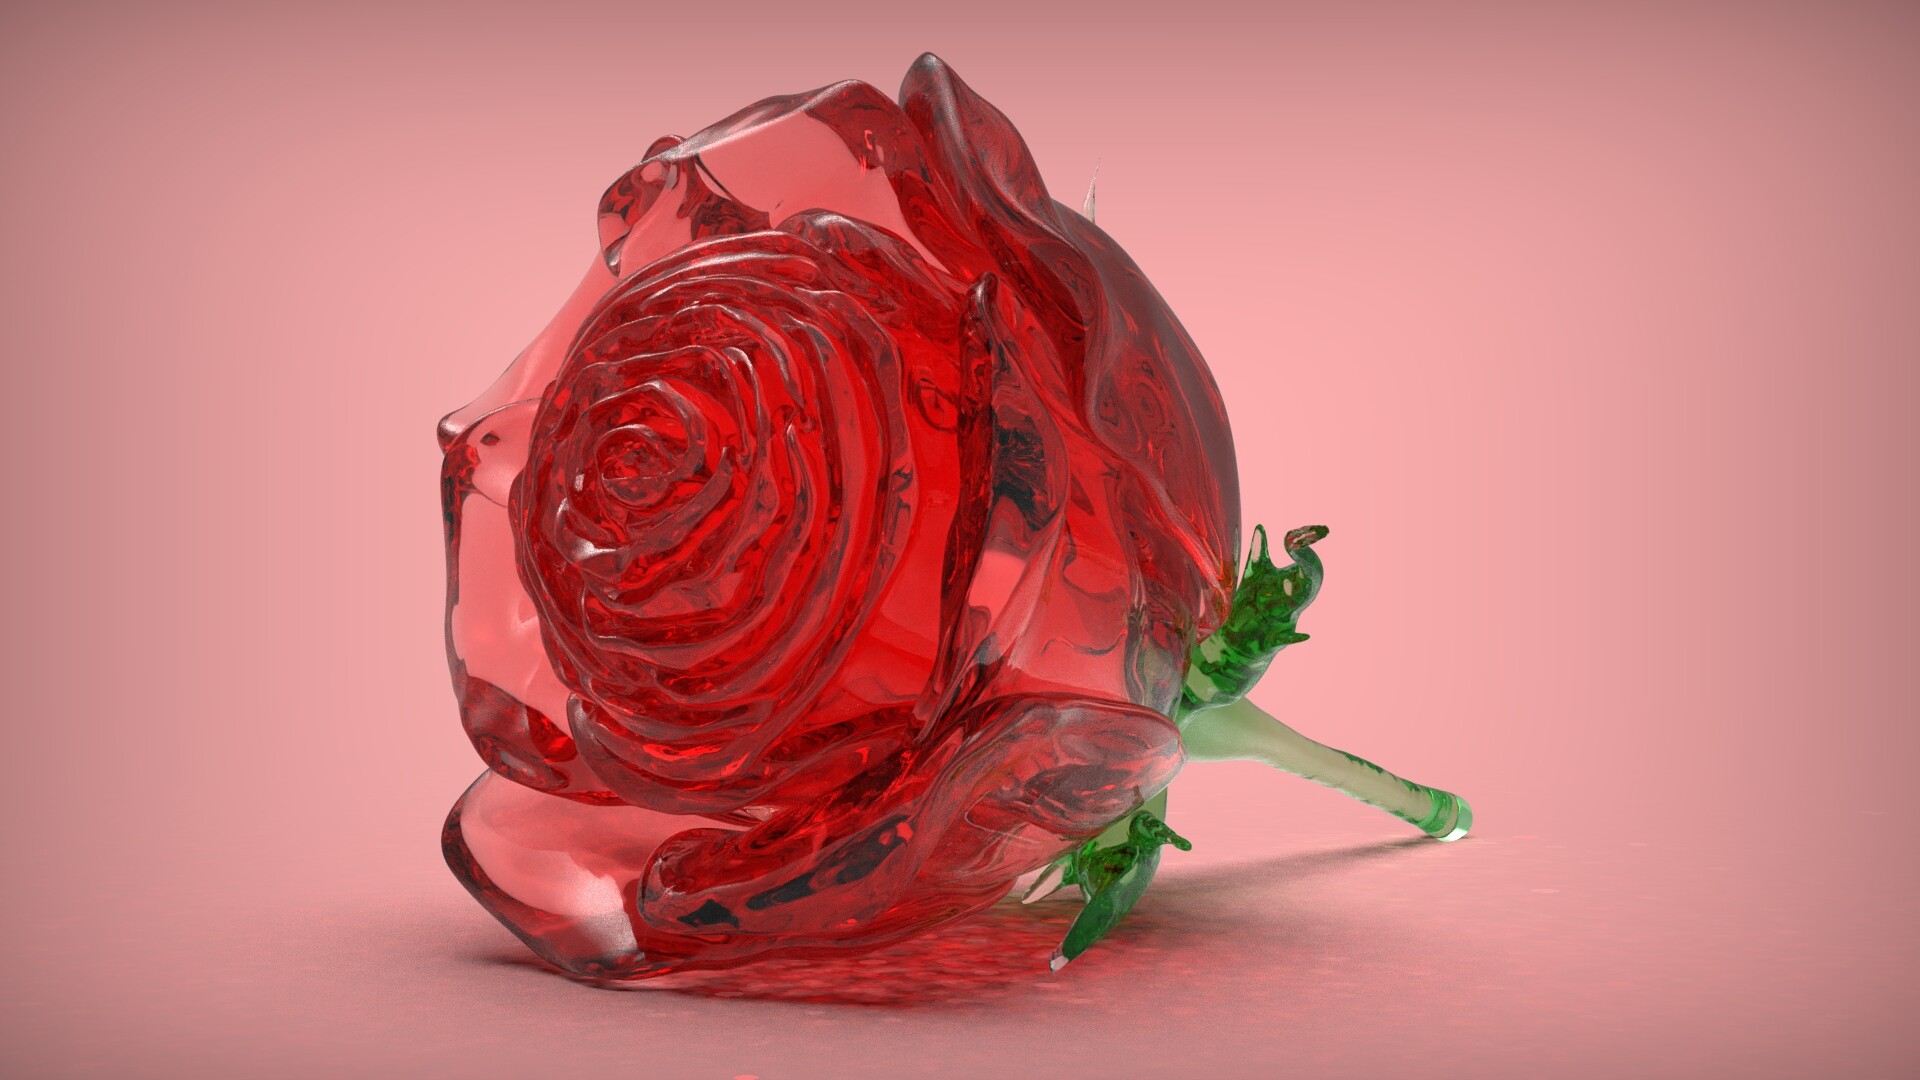 ArtStation - glass rose